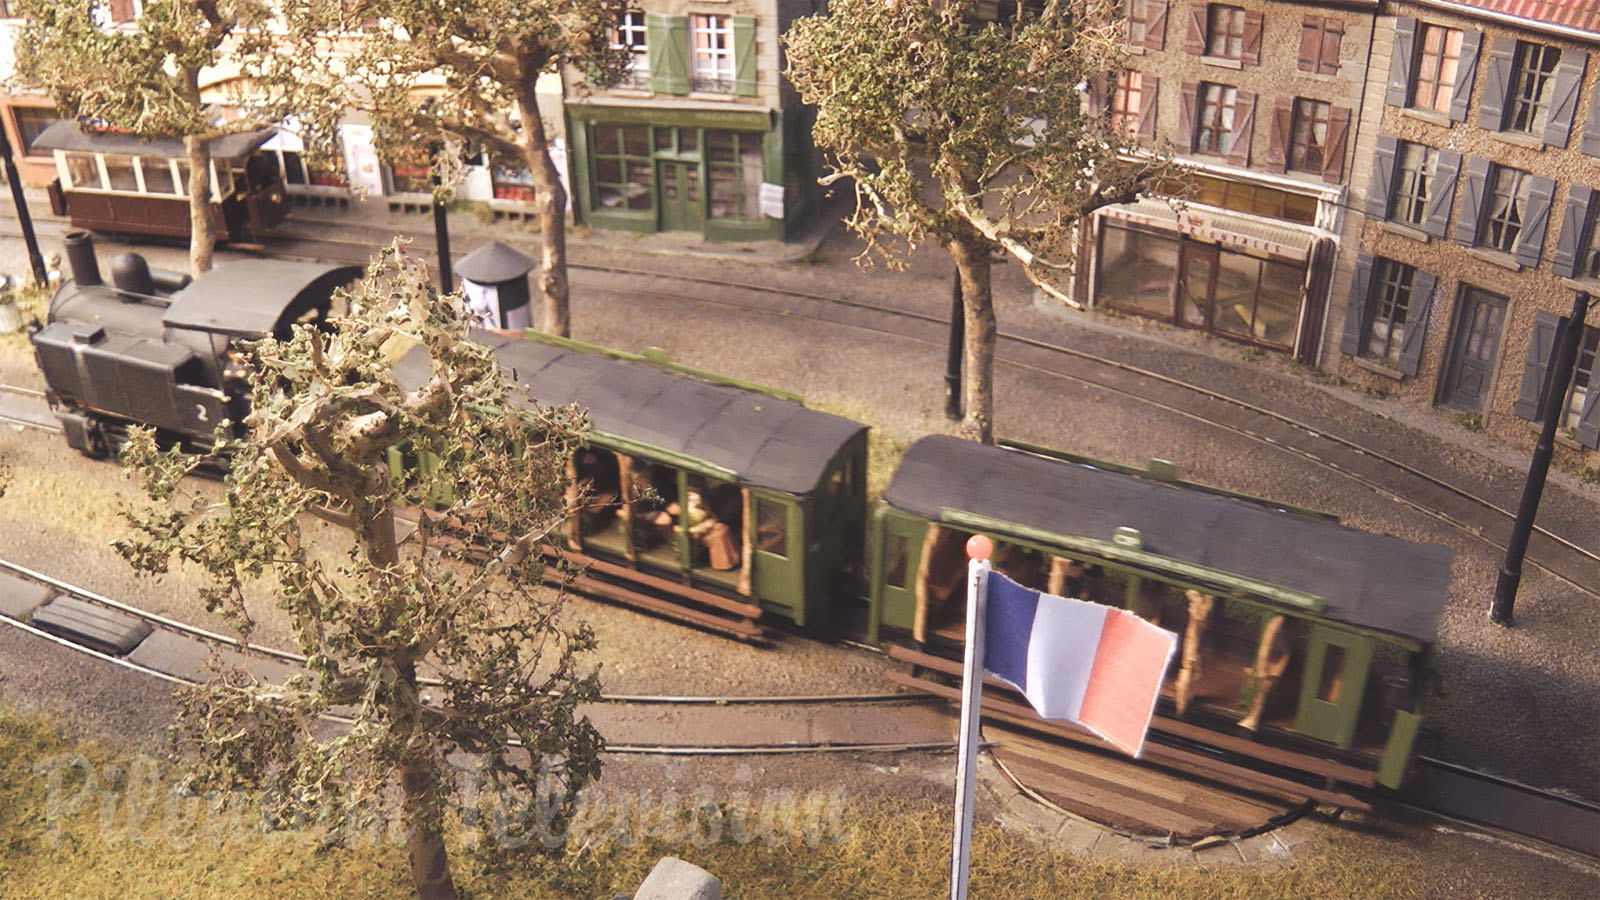 Modélisme ferroviaire - Village où tout le monde aimerait vivre grâce à la locomotive à vapeur